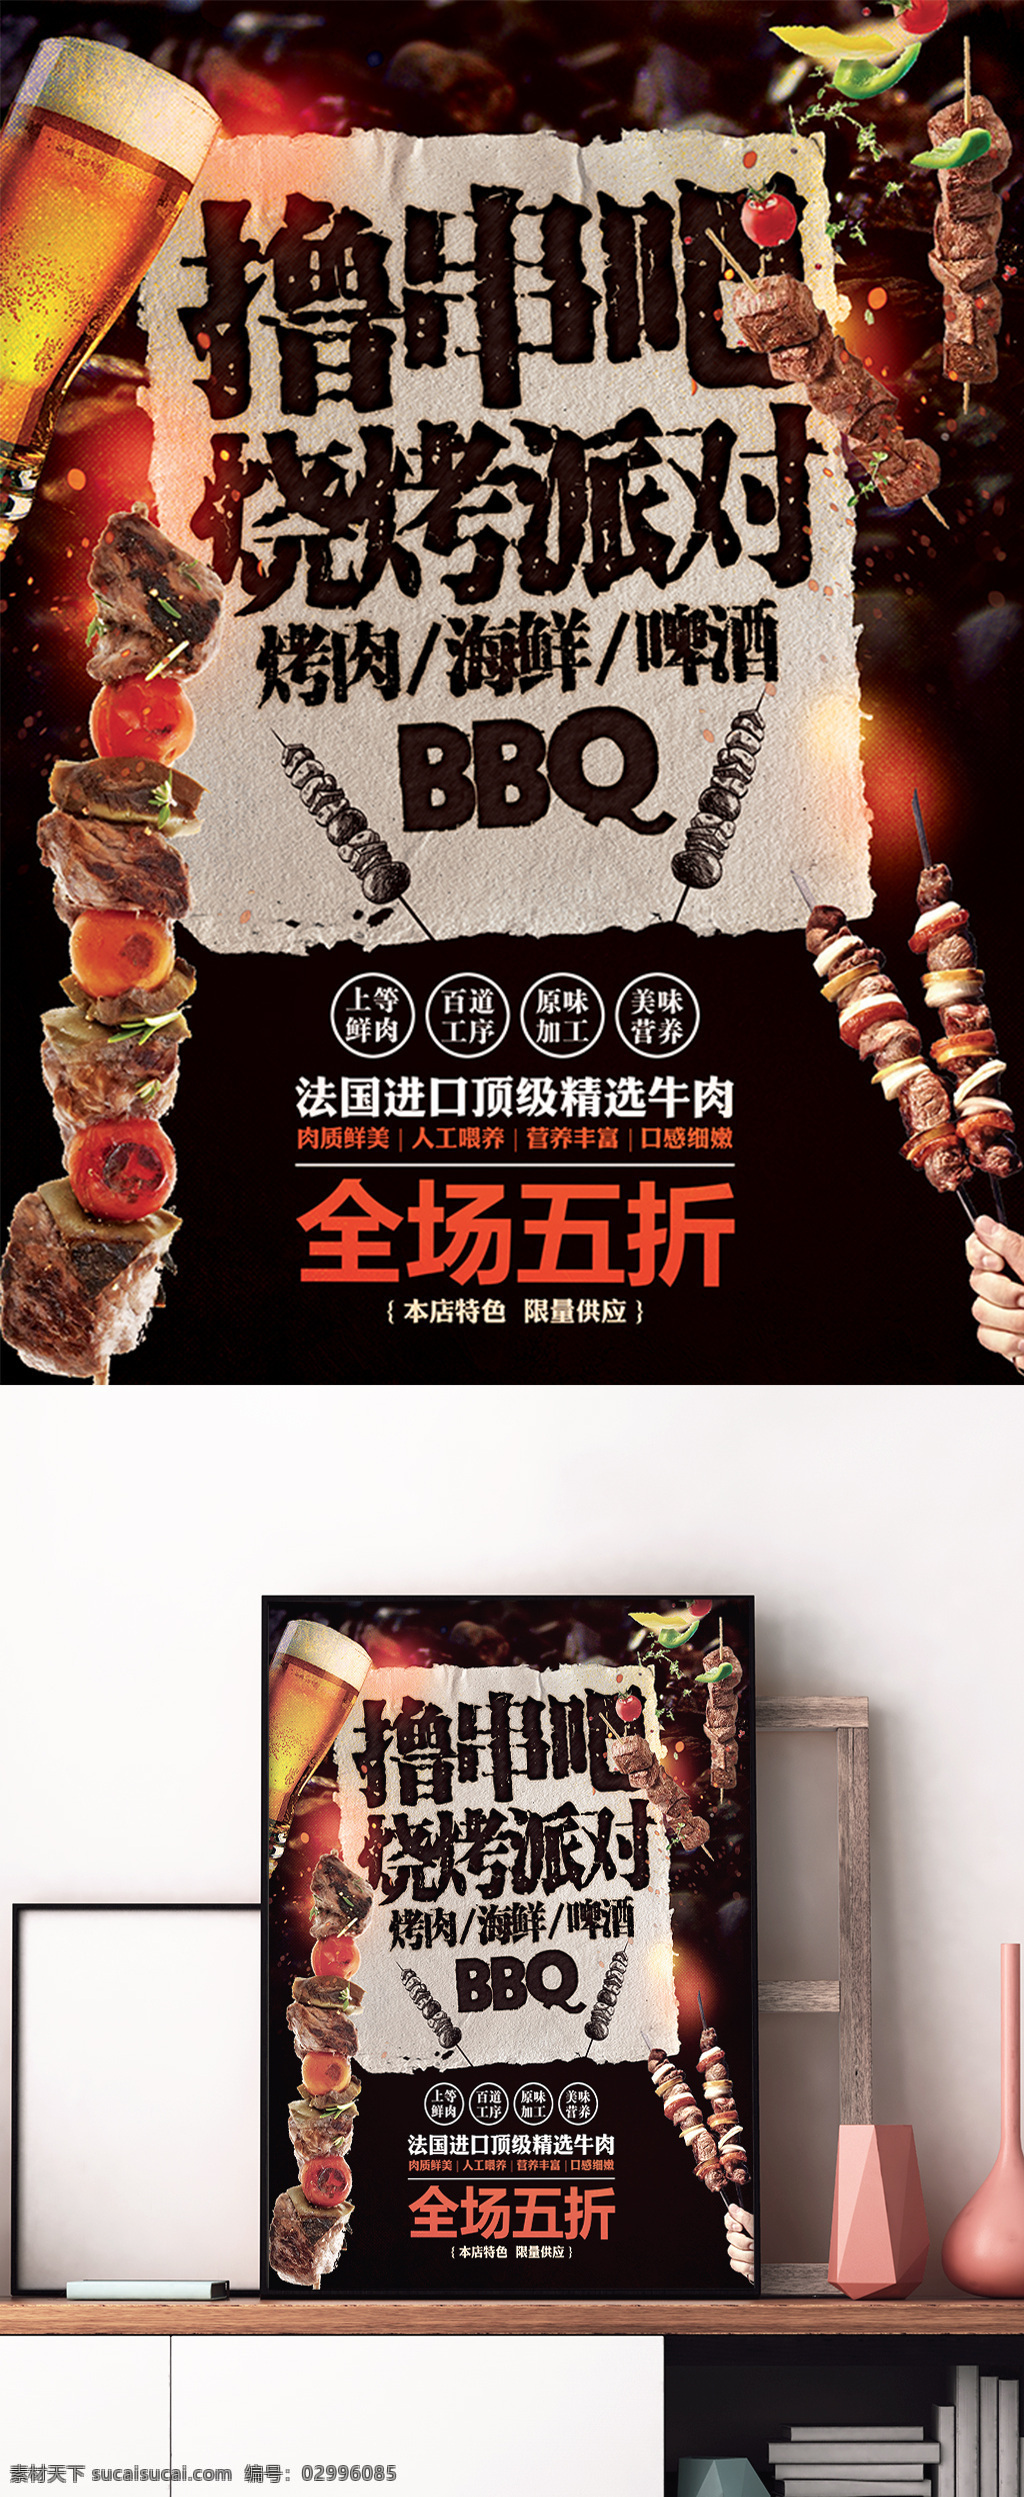 烧烤 撸 串 美食 宣传 促销 海报 烤肉 撸串 烤串 展板